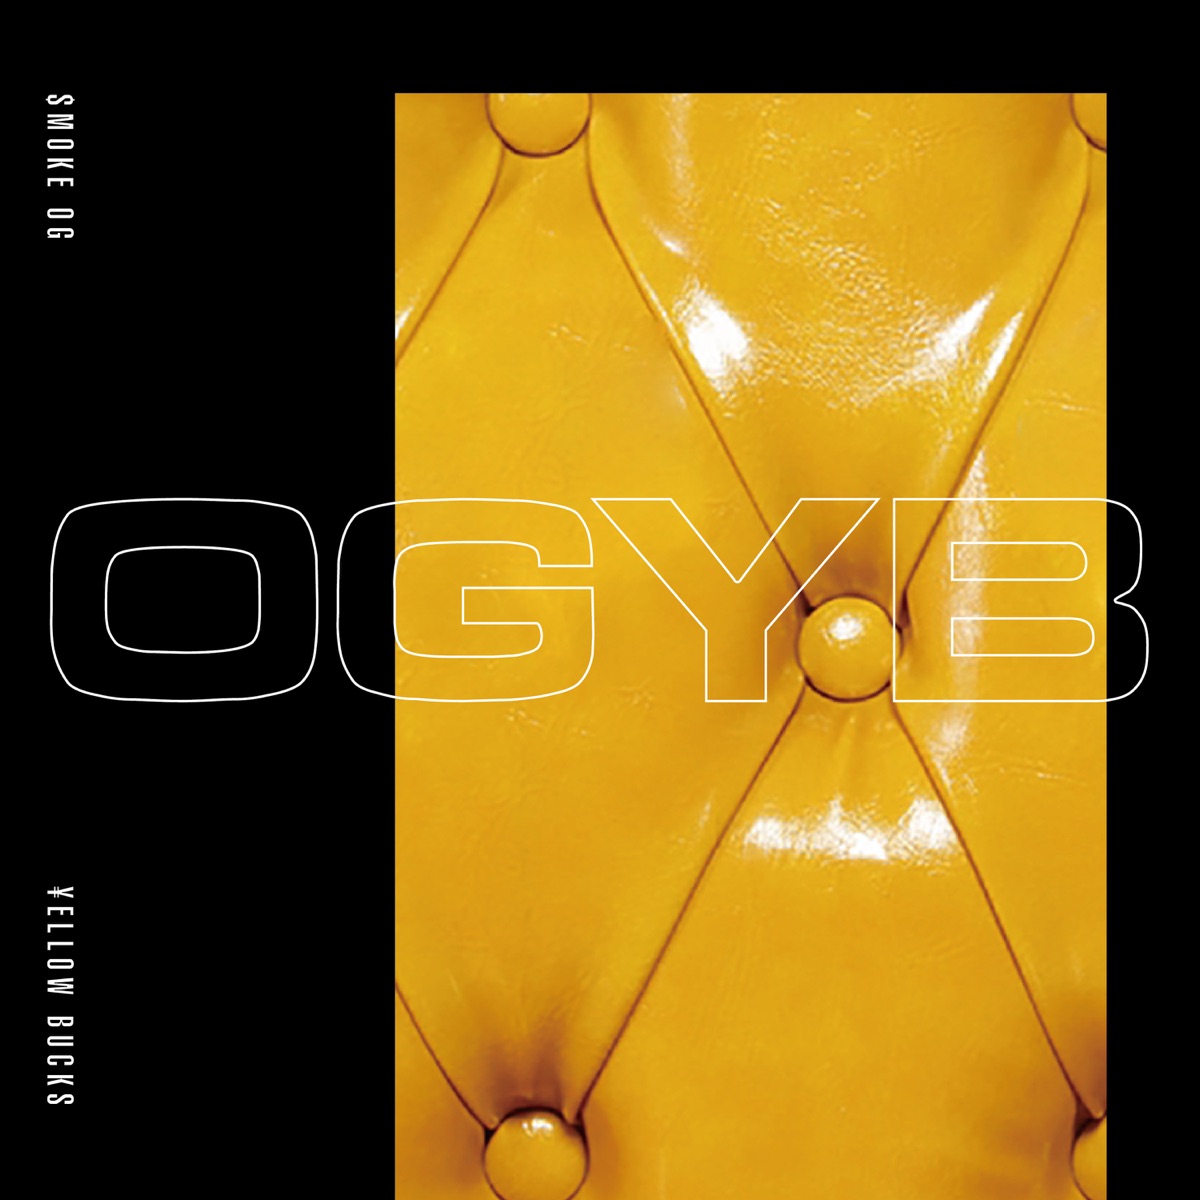 『$MOKE OG - OGYB (feat. ¥ELLOW BUCKS)』収録の『OGYB (feat. ¥ELLOW BUCKS)』ジャケット